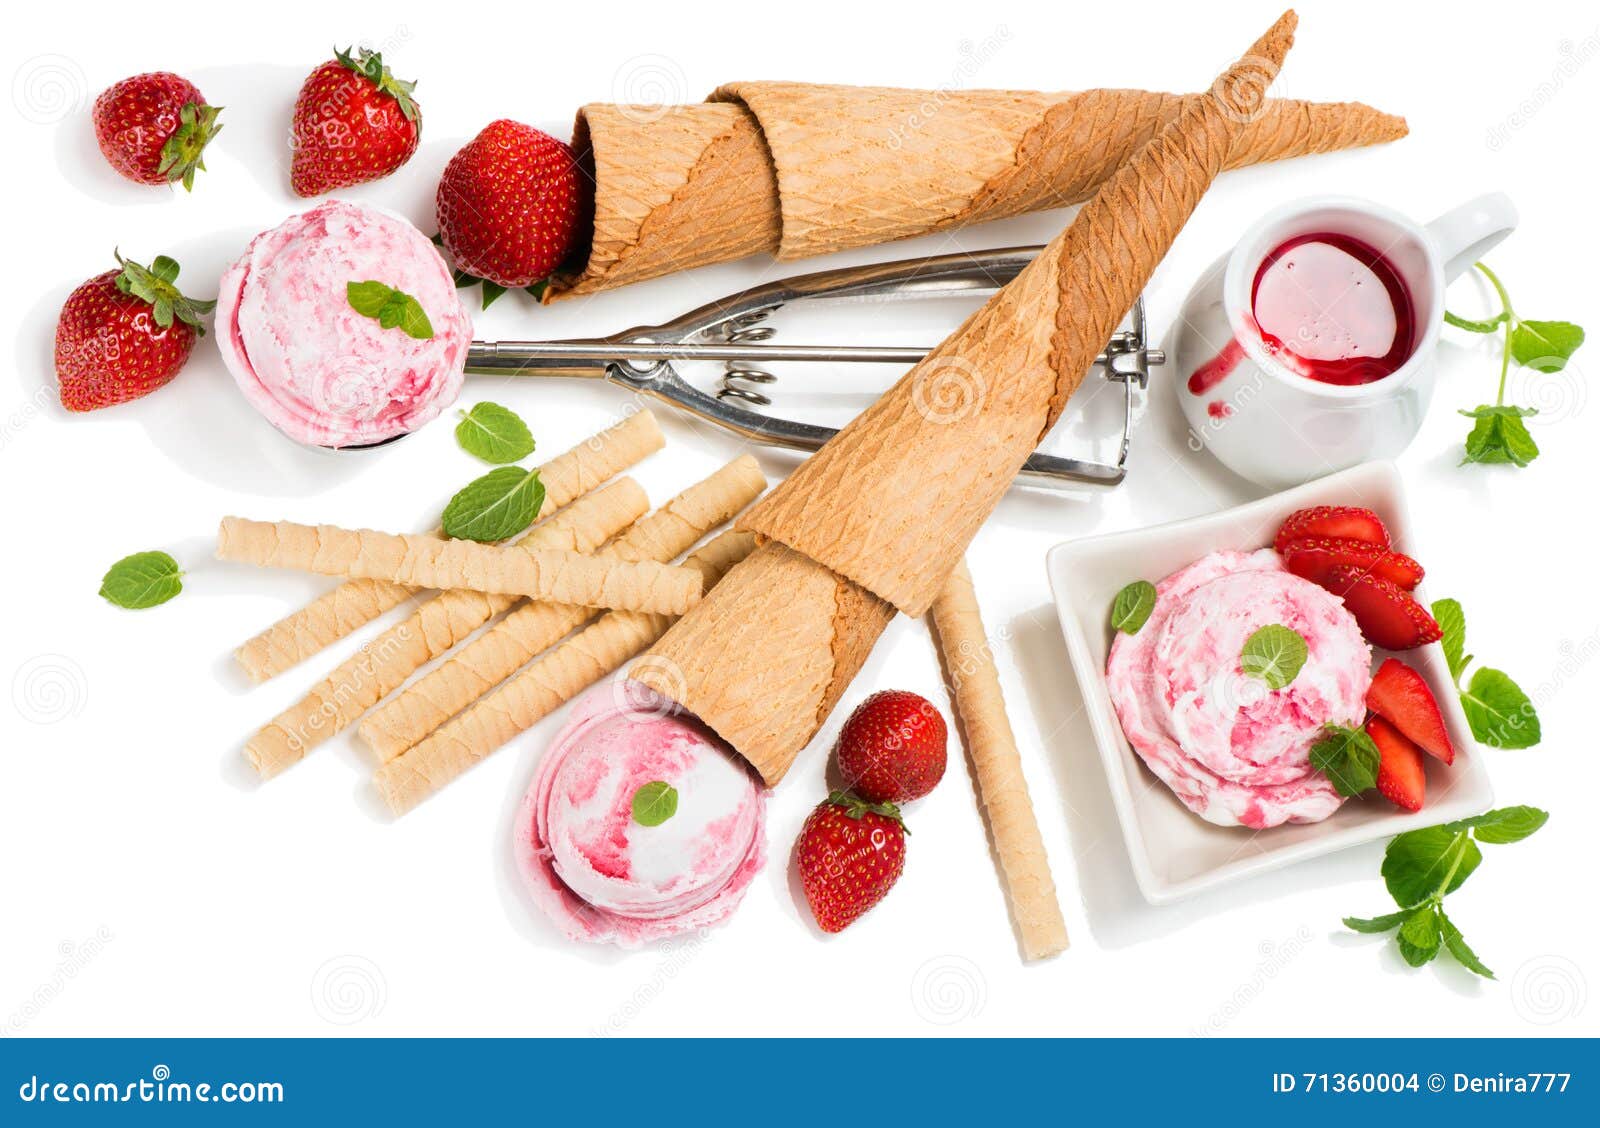 Premium Photo  Strawberry ice cream scoop isolated on white top view